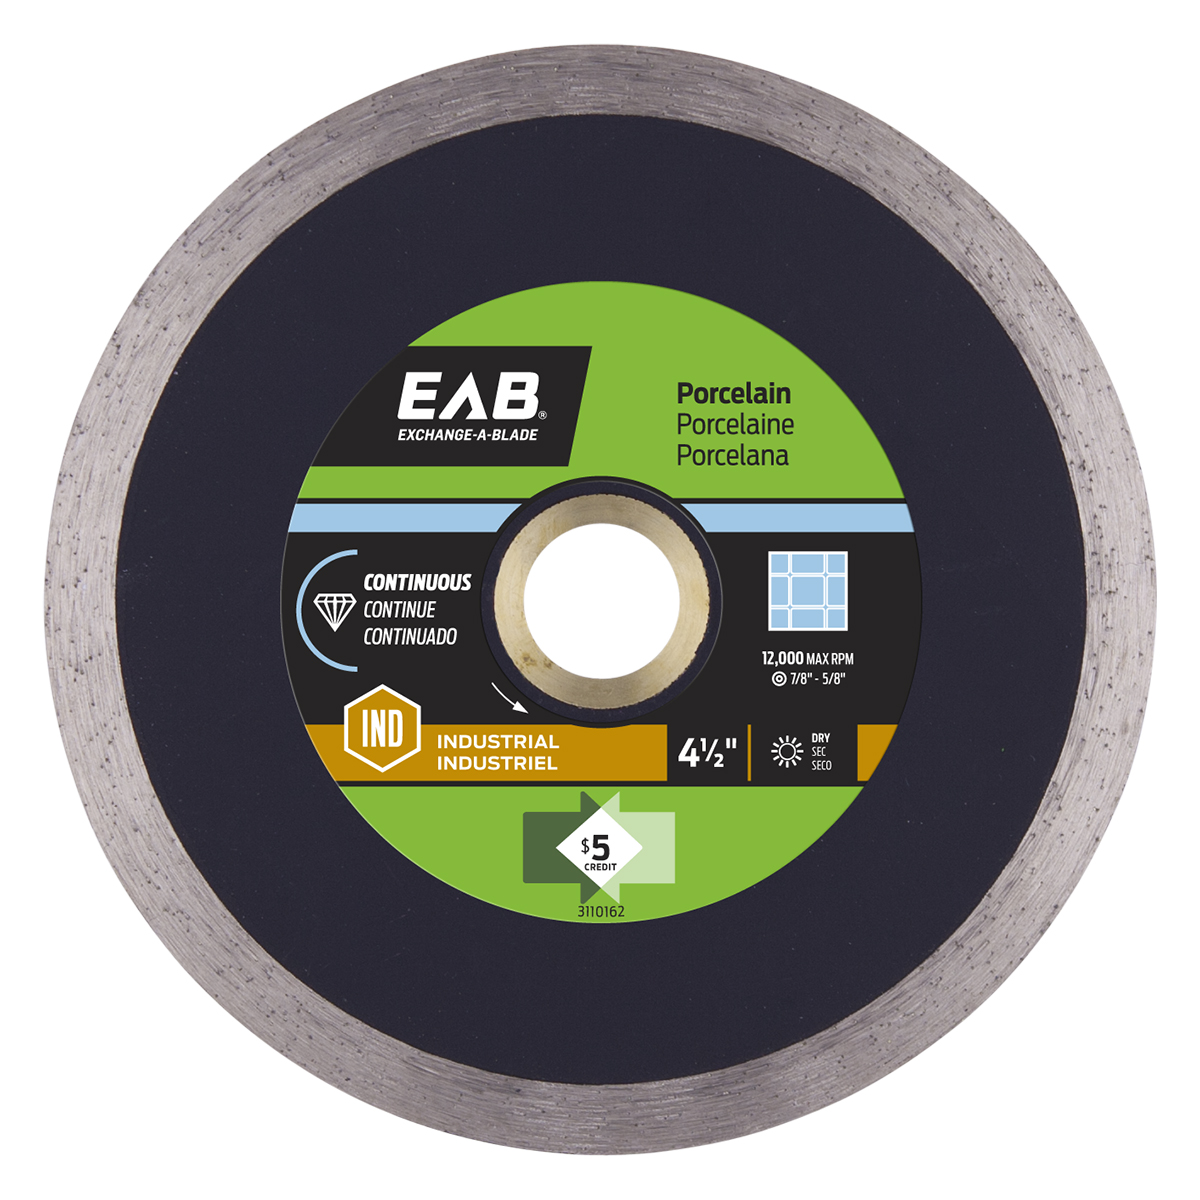 EAB (3110162) product